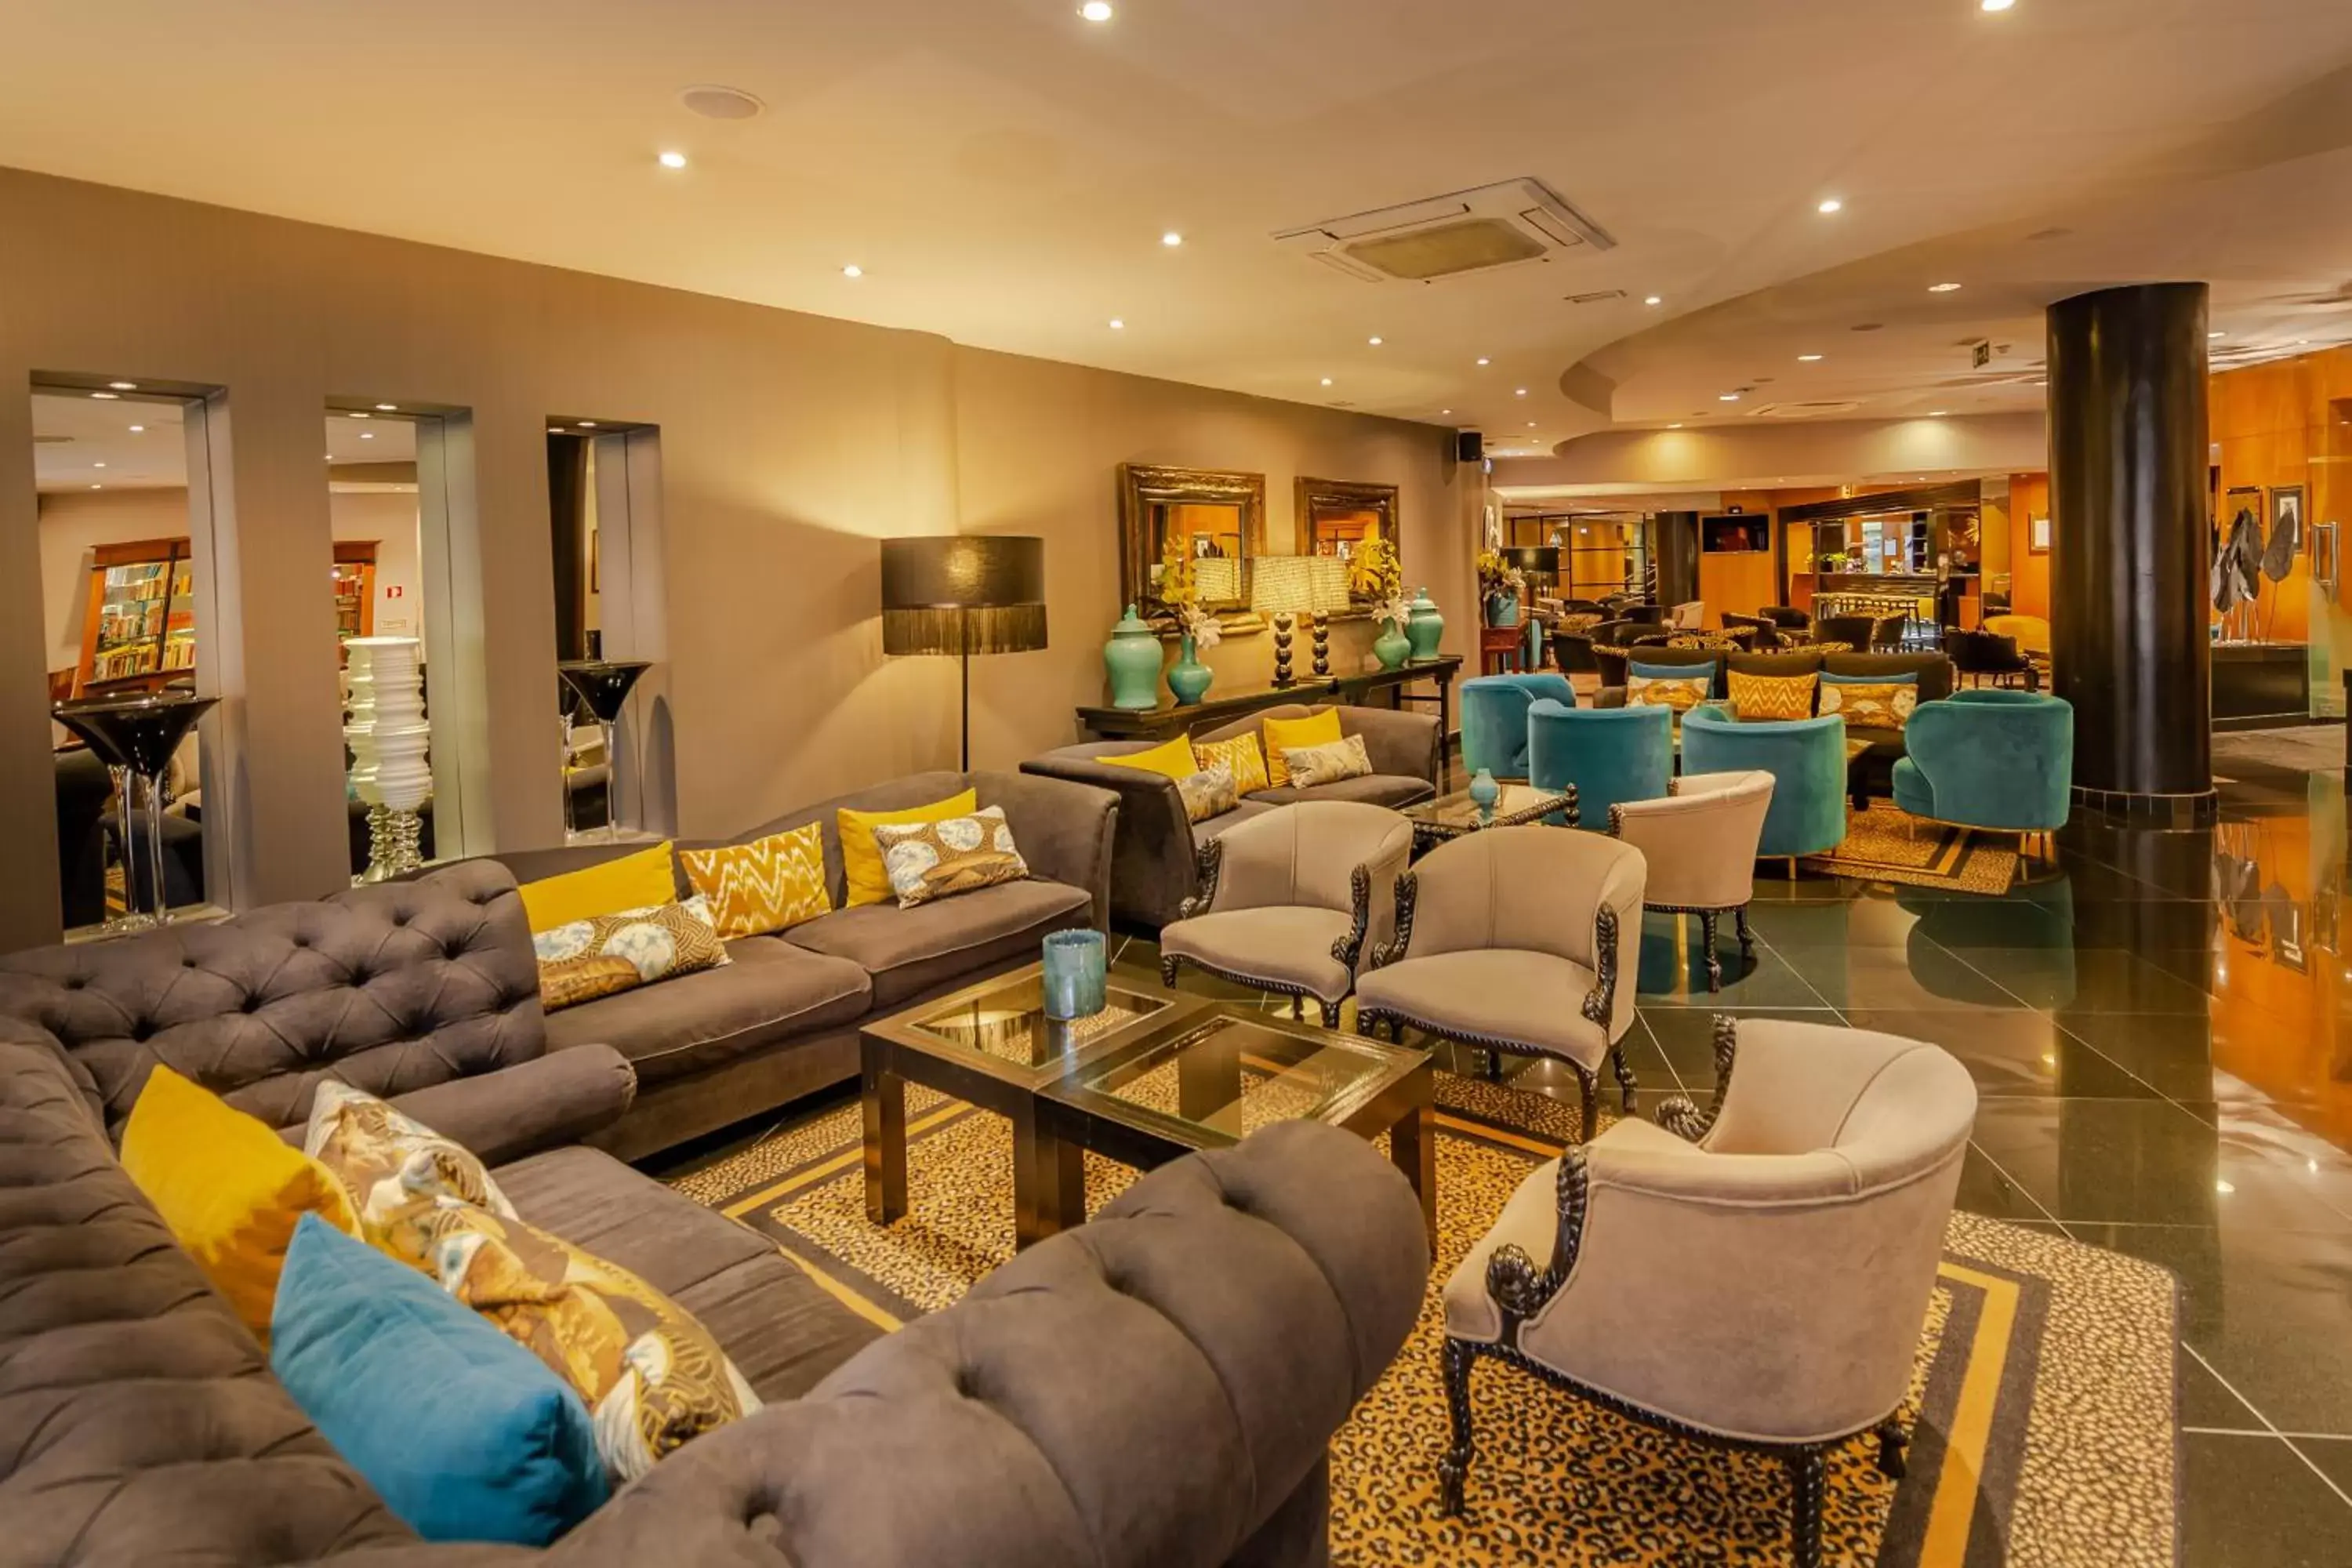 Lounge or bar, Lounge/Bar in Hotel Mundial